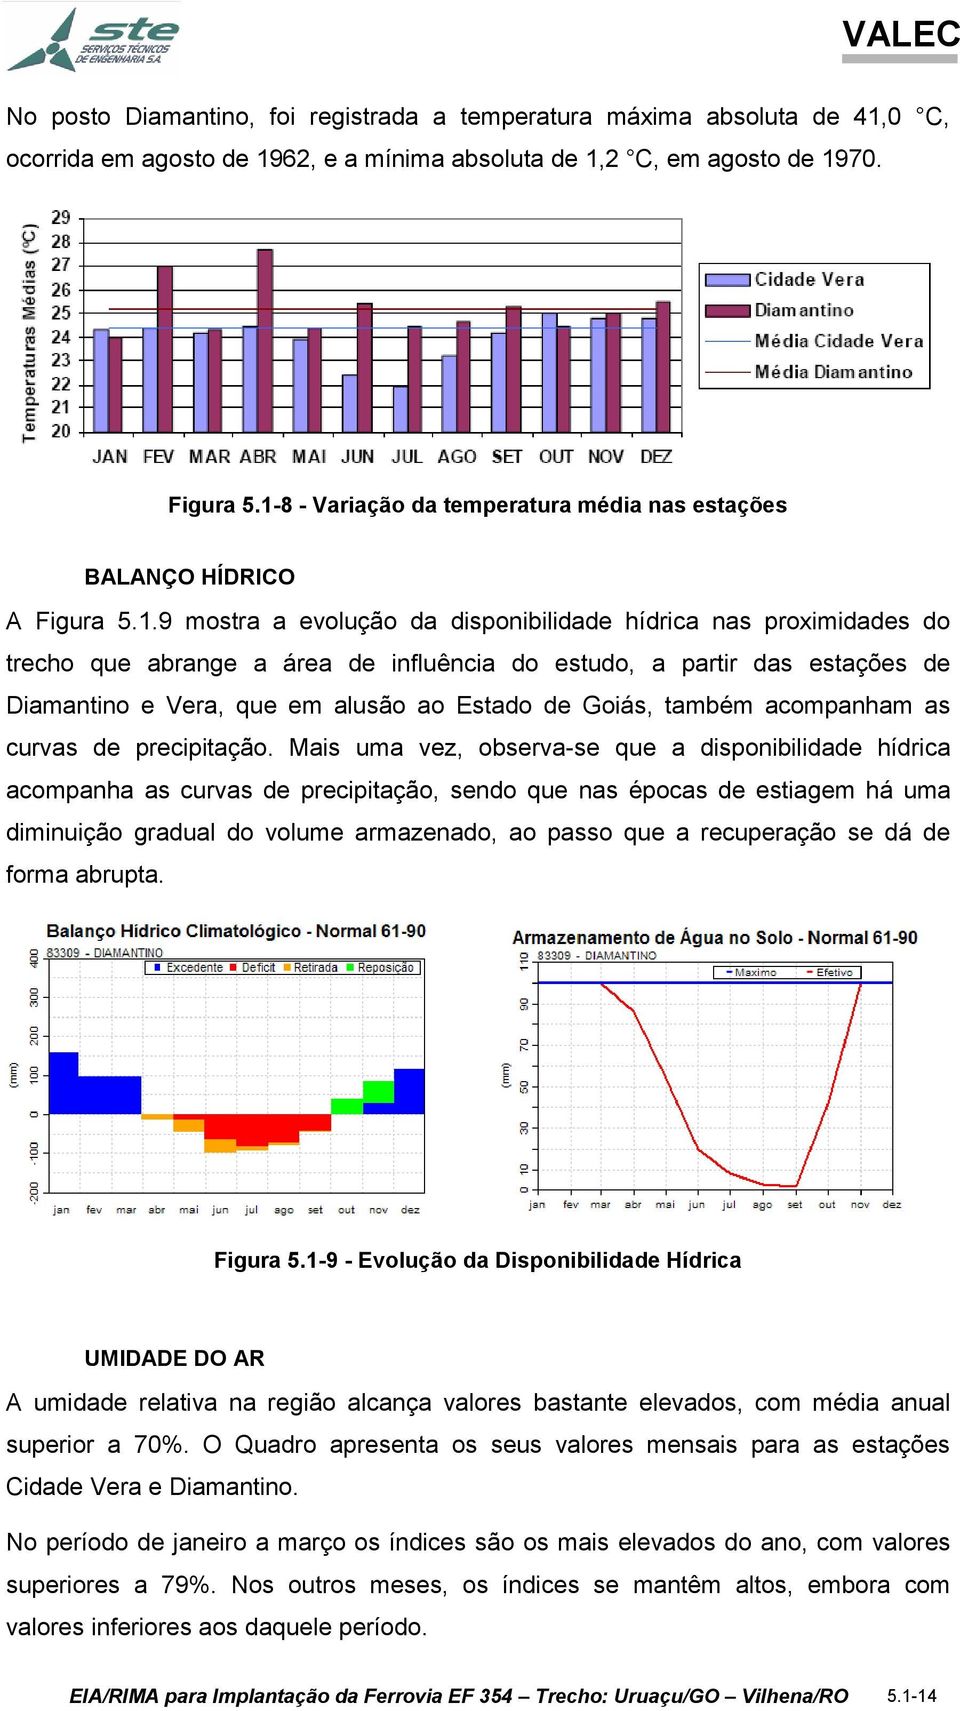 partir das estações de Diamantino e Vera, que em alusão ao Estado de Goiás, também acompanham as curvas de precipitação.